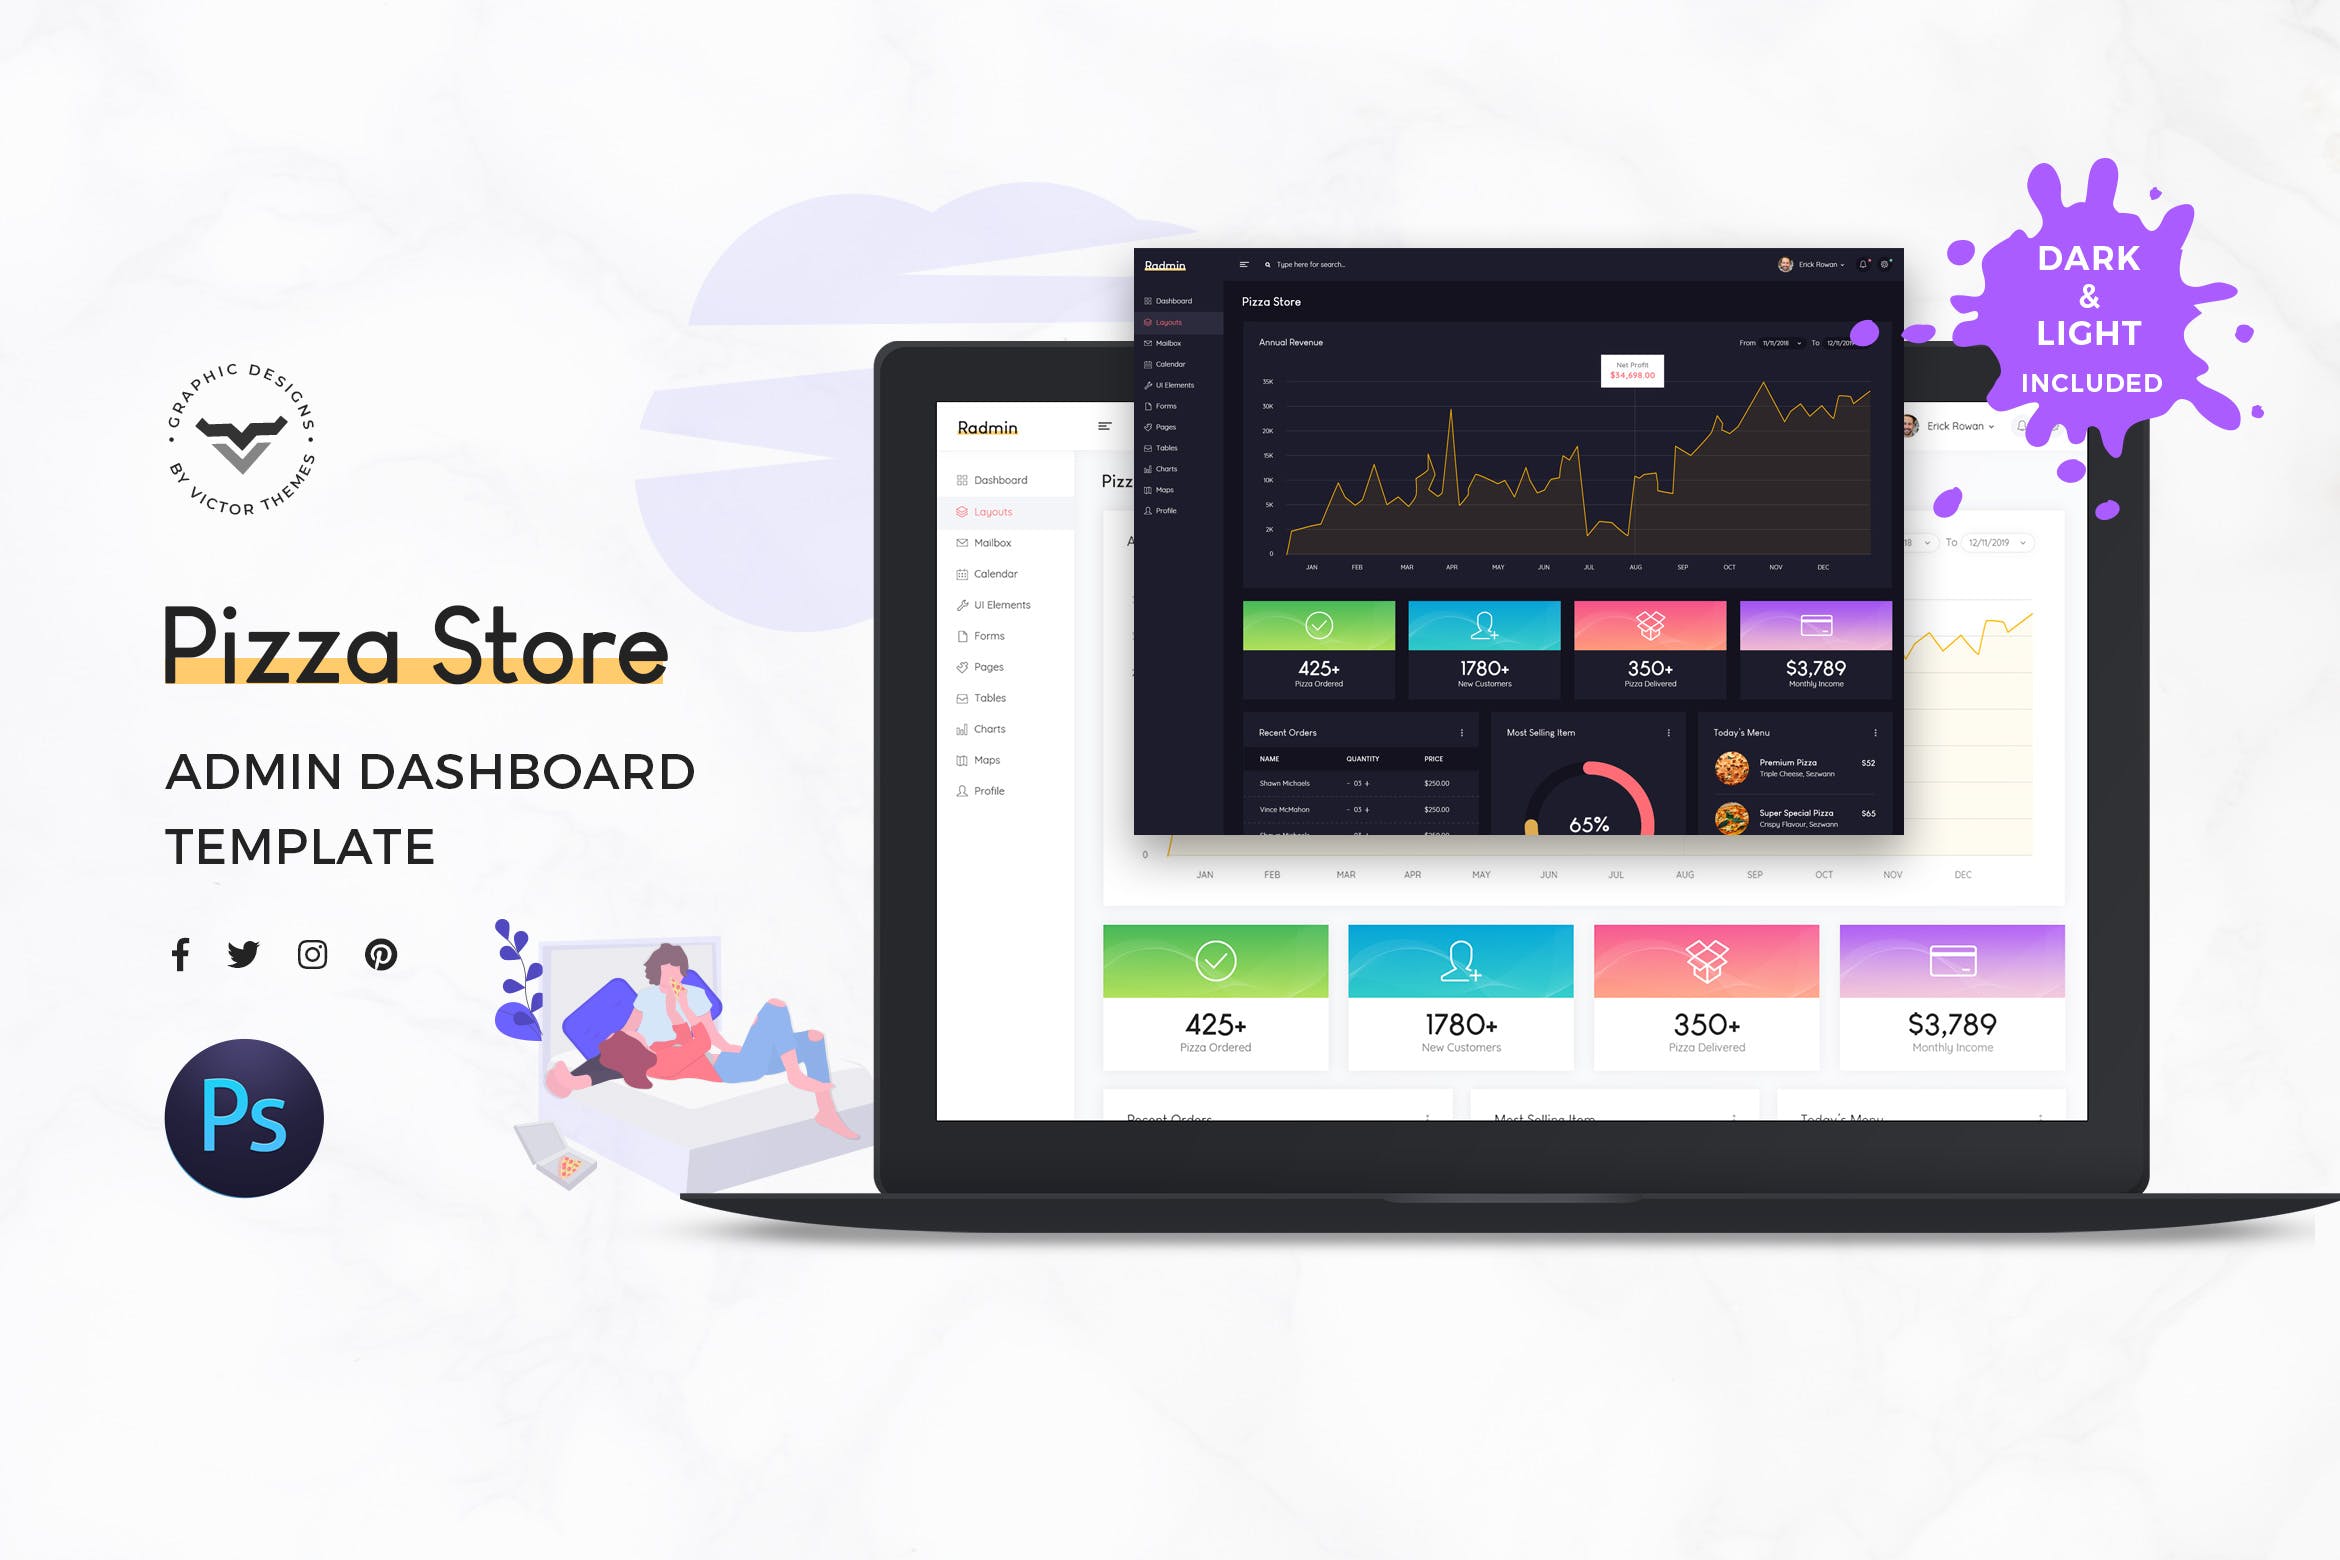 披萨店网站/系统后台管理UI设计第一素材精选套件 Pizza Store Admin Dashboard UI Kit插图